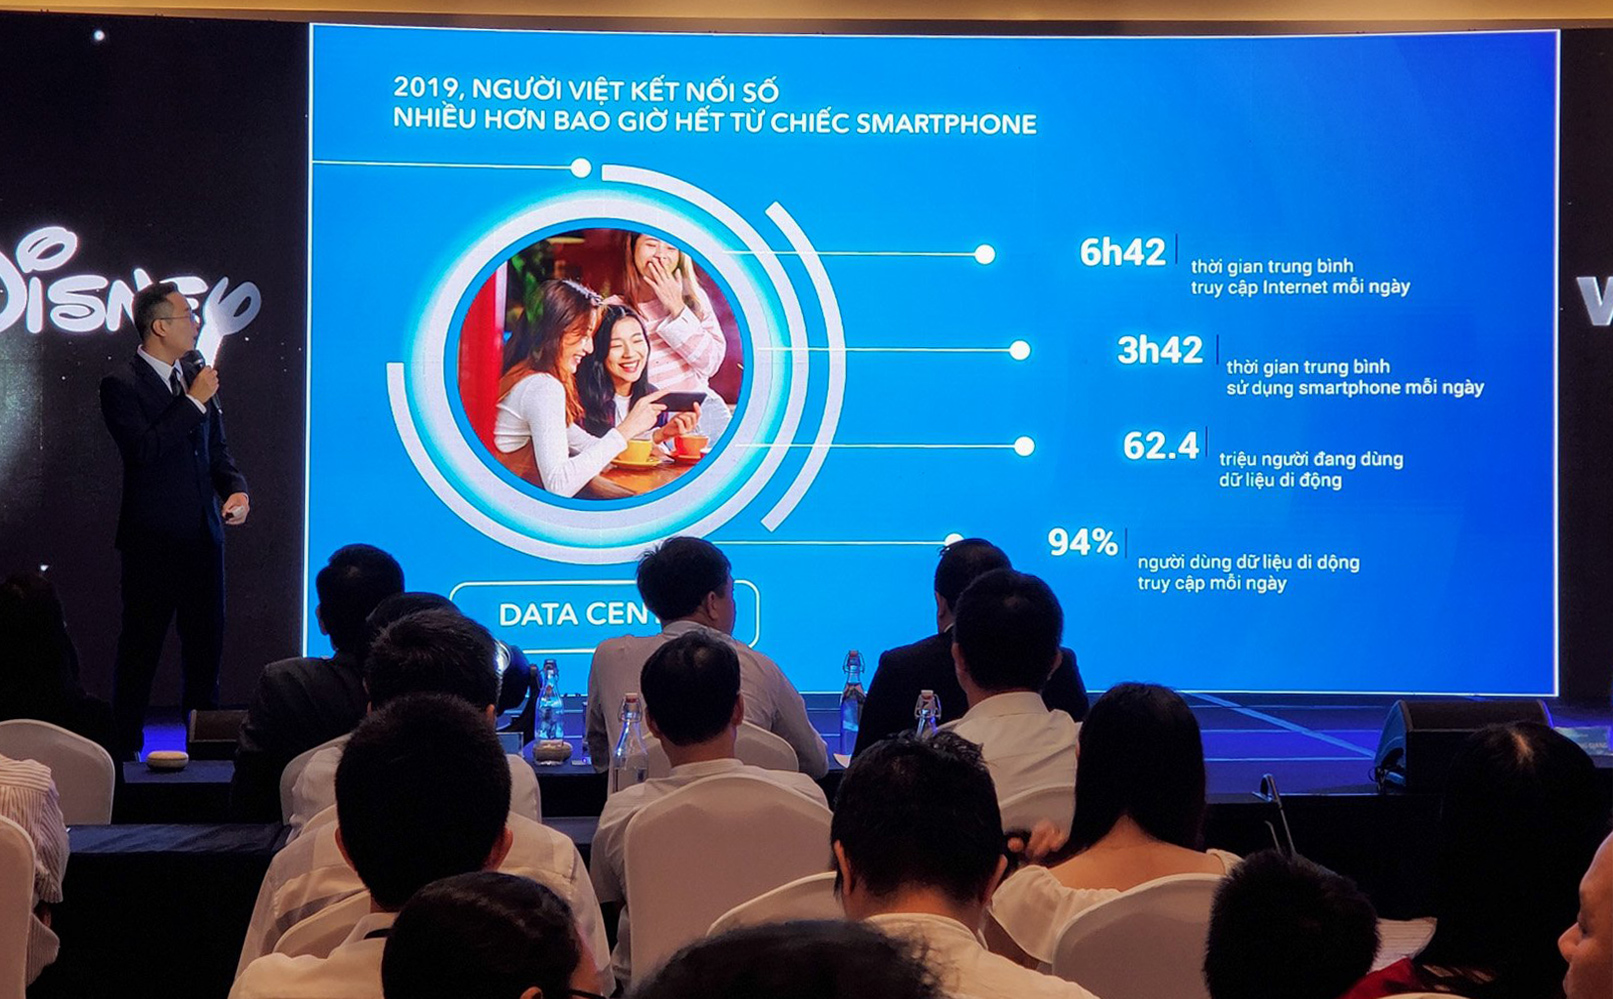 Người Việt: dùng internet 6h42 mỗi ngày, 3h42 trên smartphone